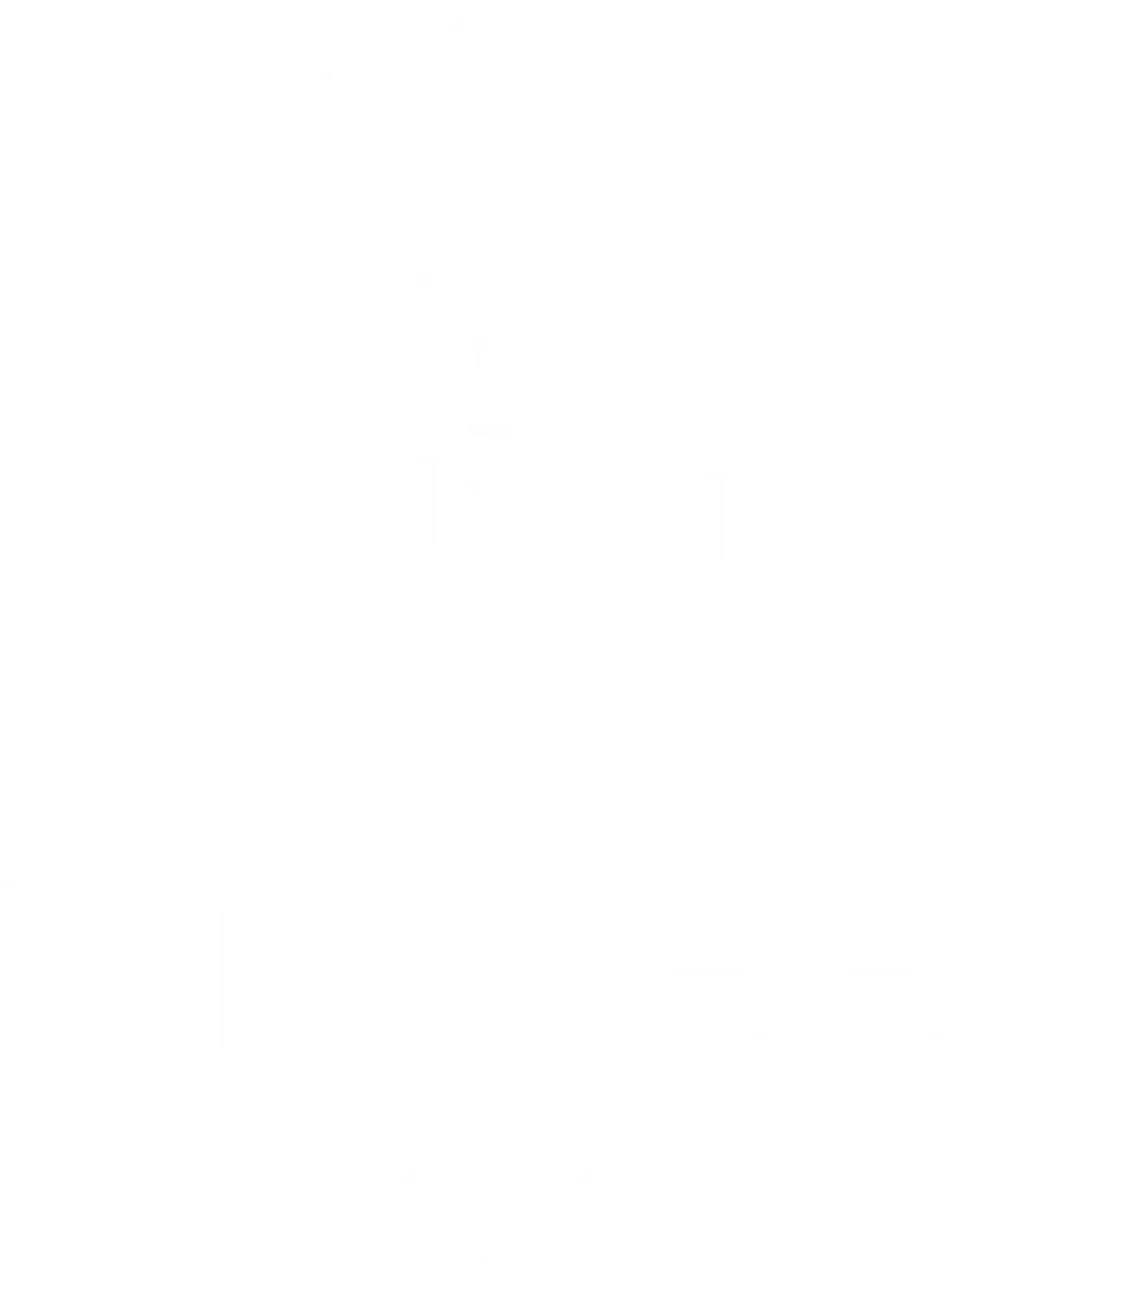 Killeen Castle in County Meath www.killeencastle.com